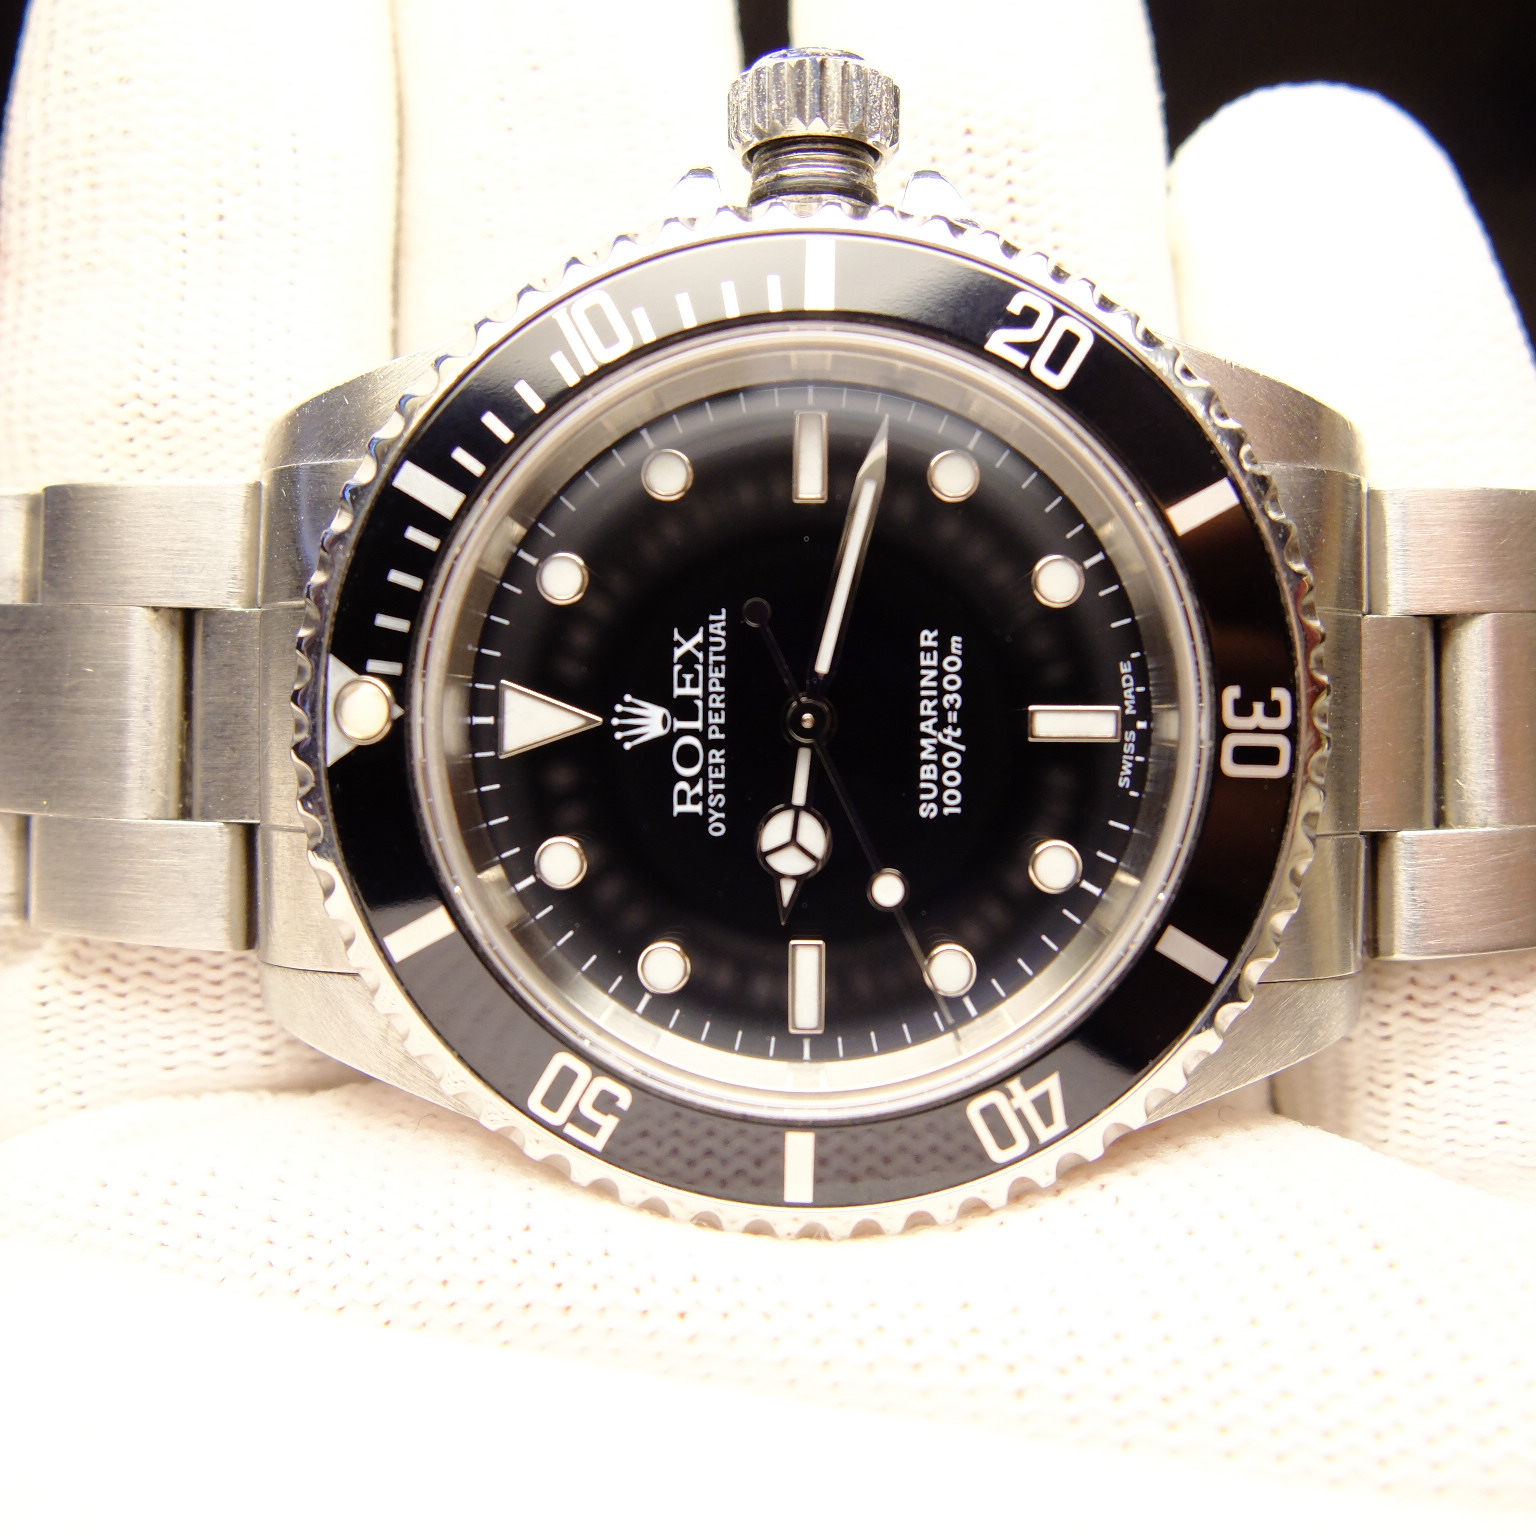 a rolex 14060m submariner watch, more information